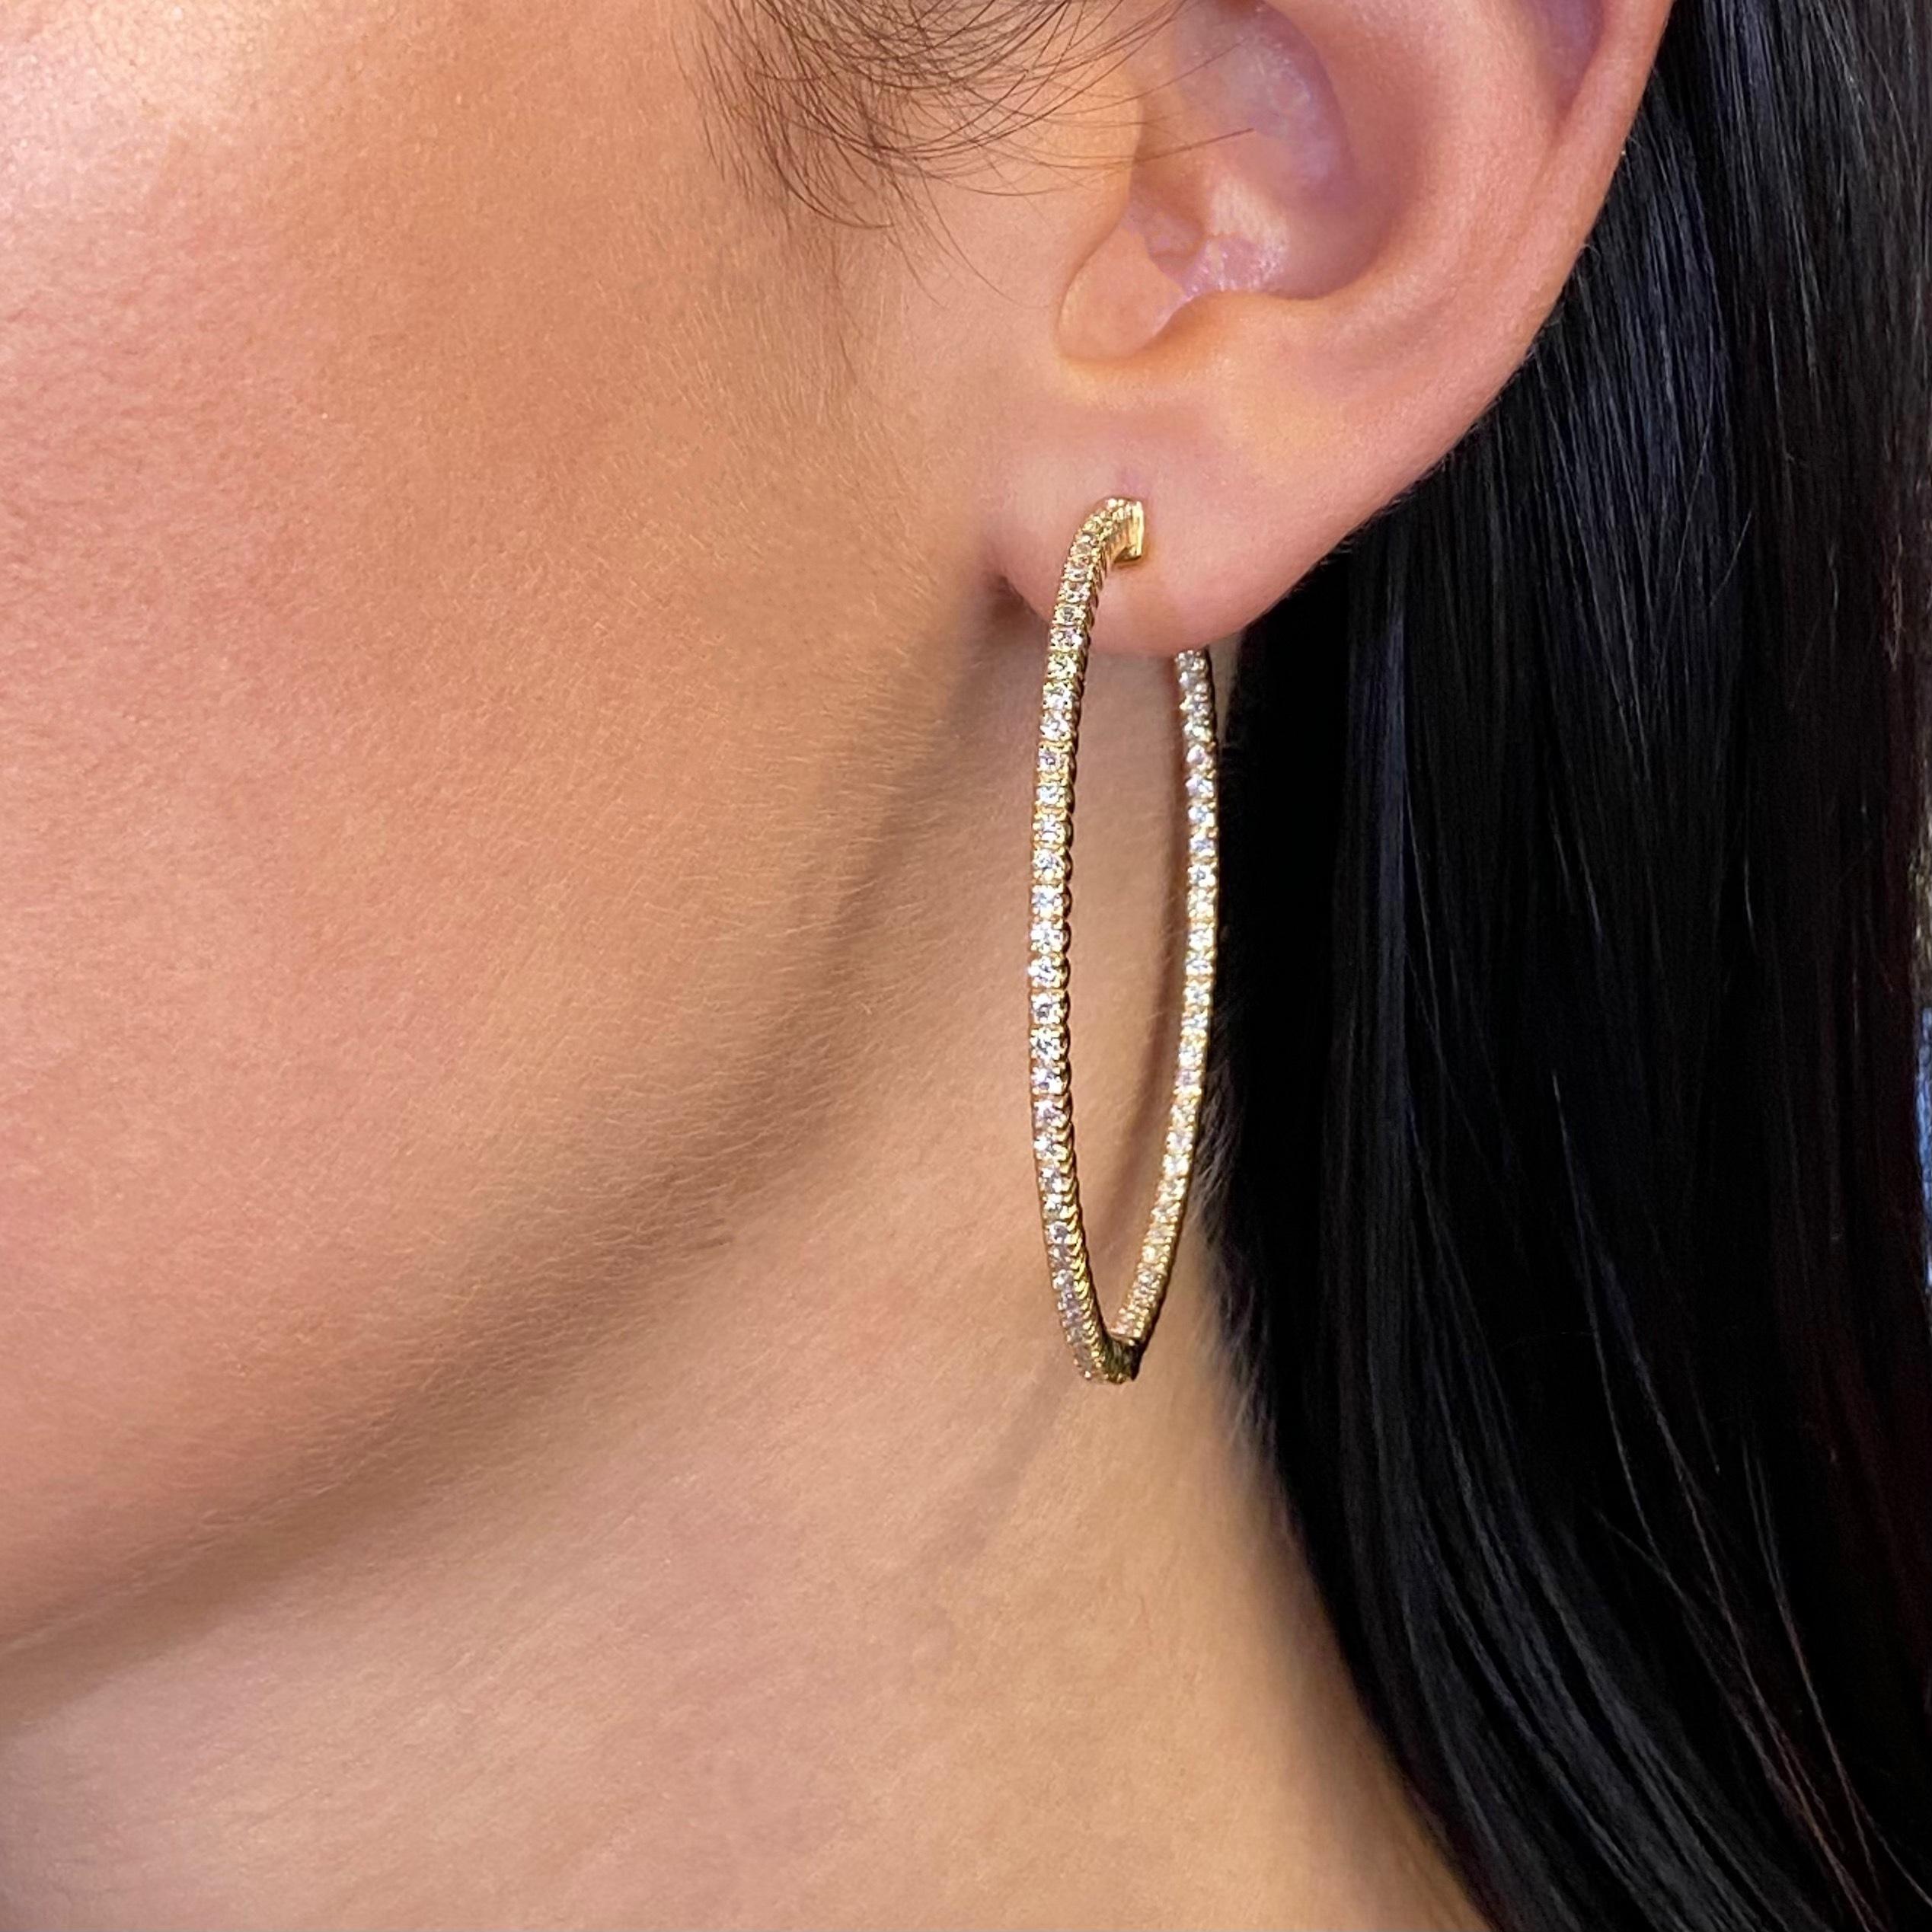 Rachel Koen 14K Yellow Gold Diamond Hoop Earring 2.98cttw In New Condition For Sale In New York, NY